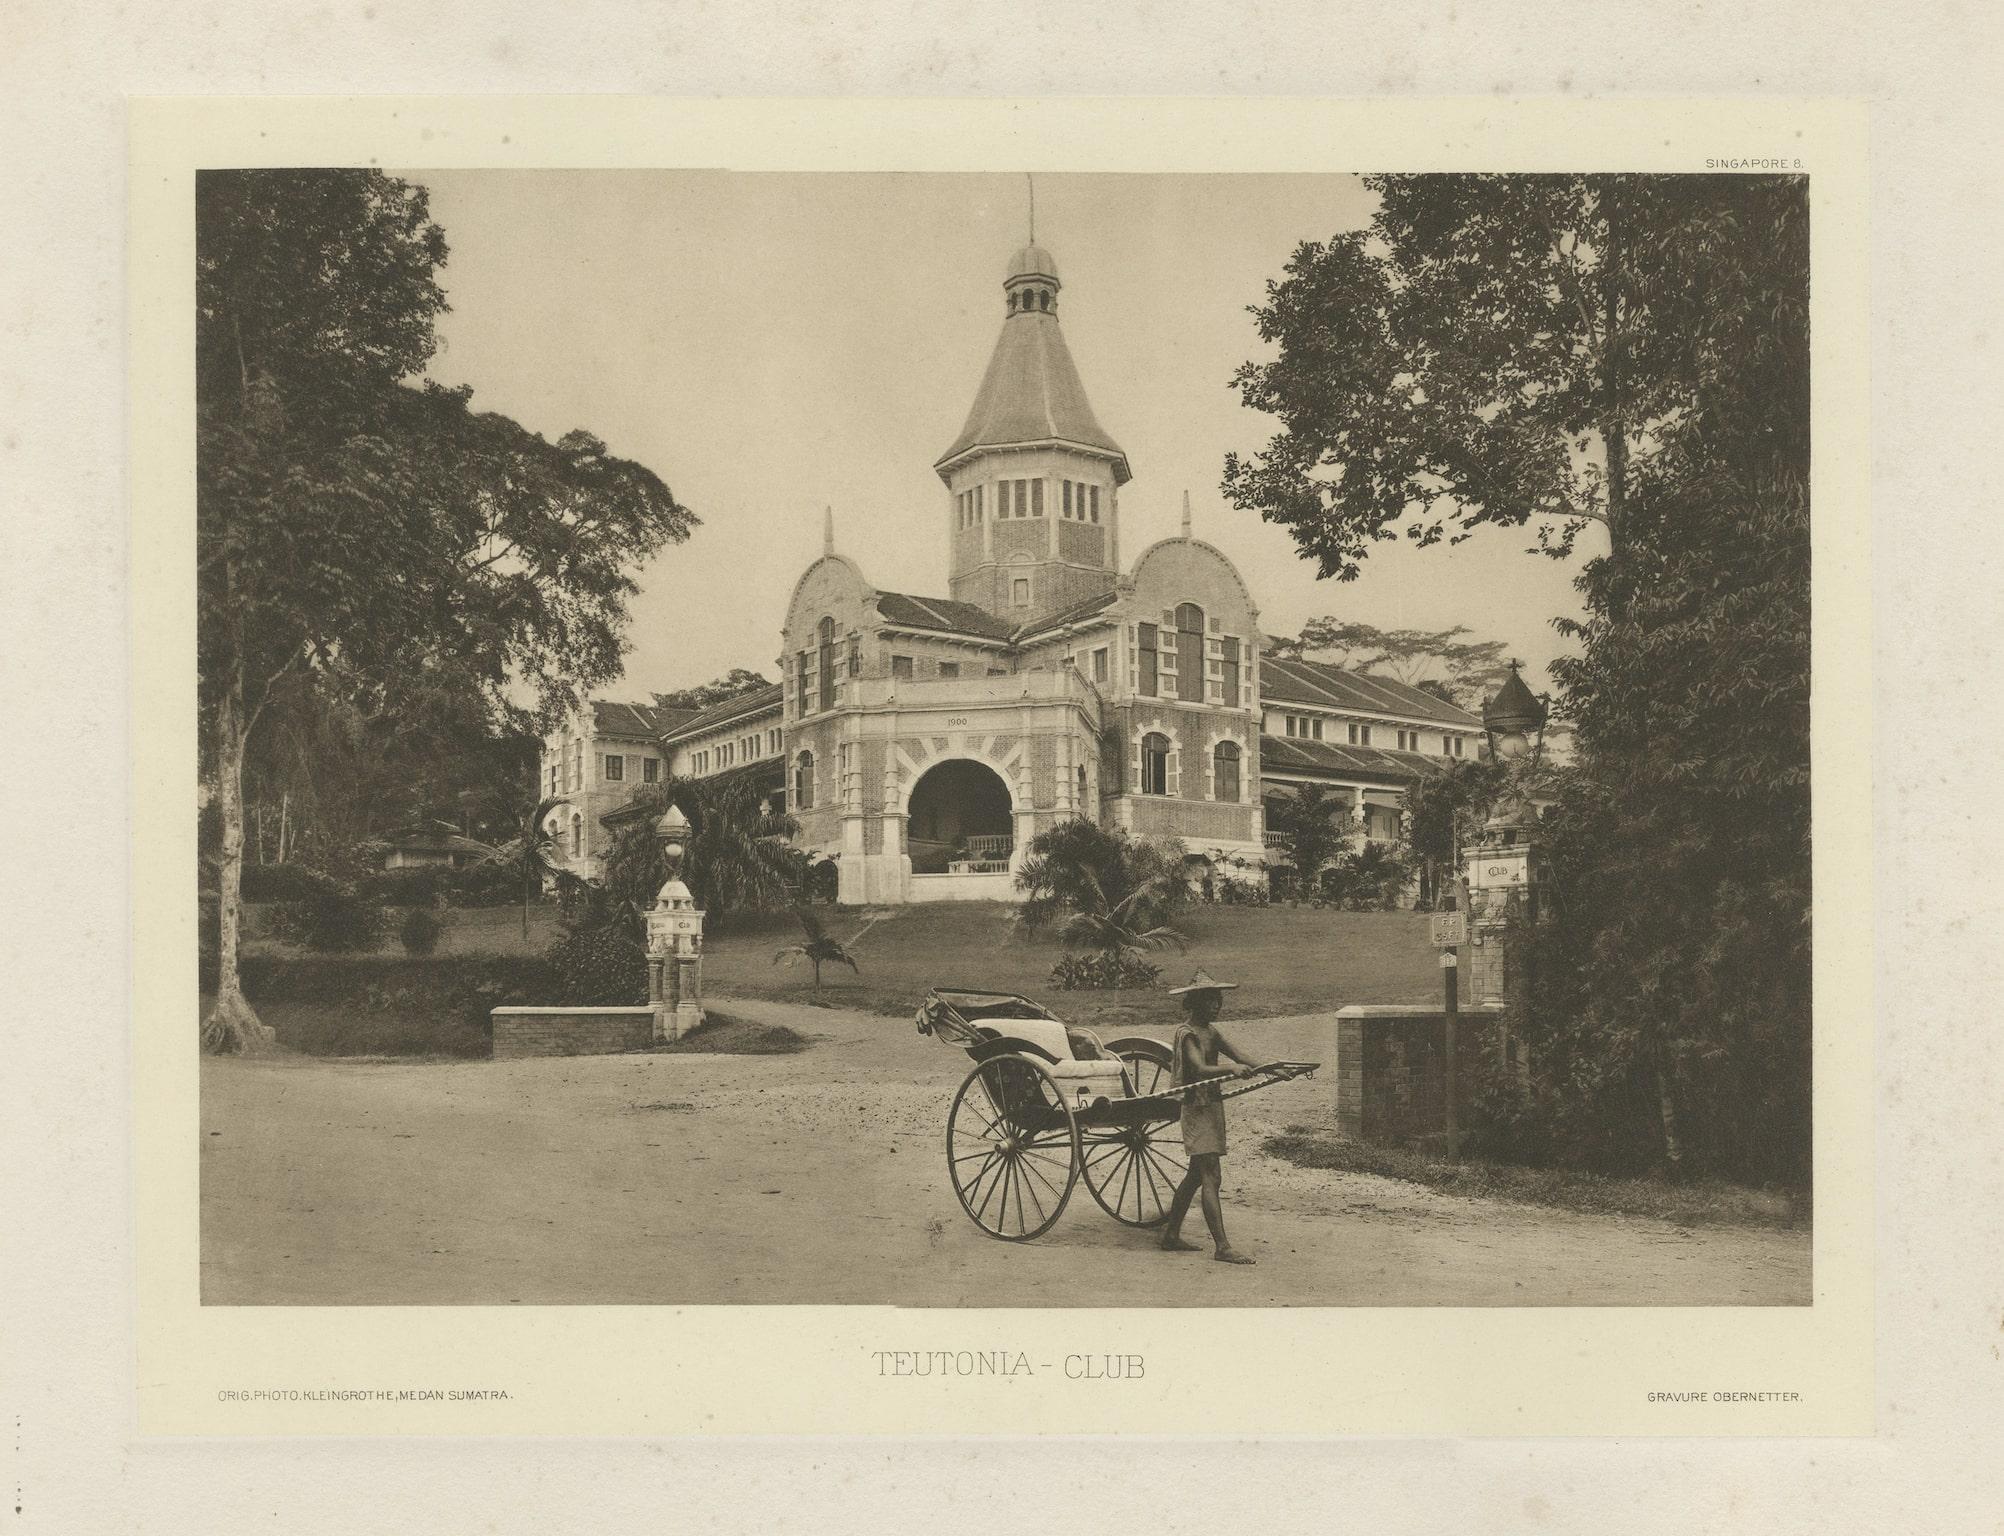 Teutonia Club, Singapur. Der 1856 gegründete Club war ein Elite-Gebäude der deutschen Gemeinde in Singapur, bis er 1918 von drei jüdischen Brüdern der Familie Manasseh übernommen wurde, die ihn 1929 in Goodwood Park Hotel umwandelten.

Diese